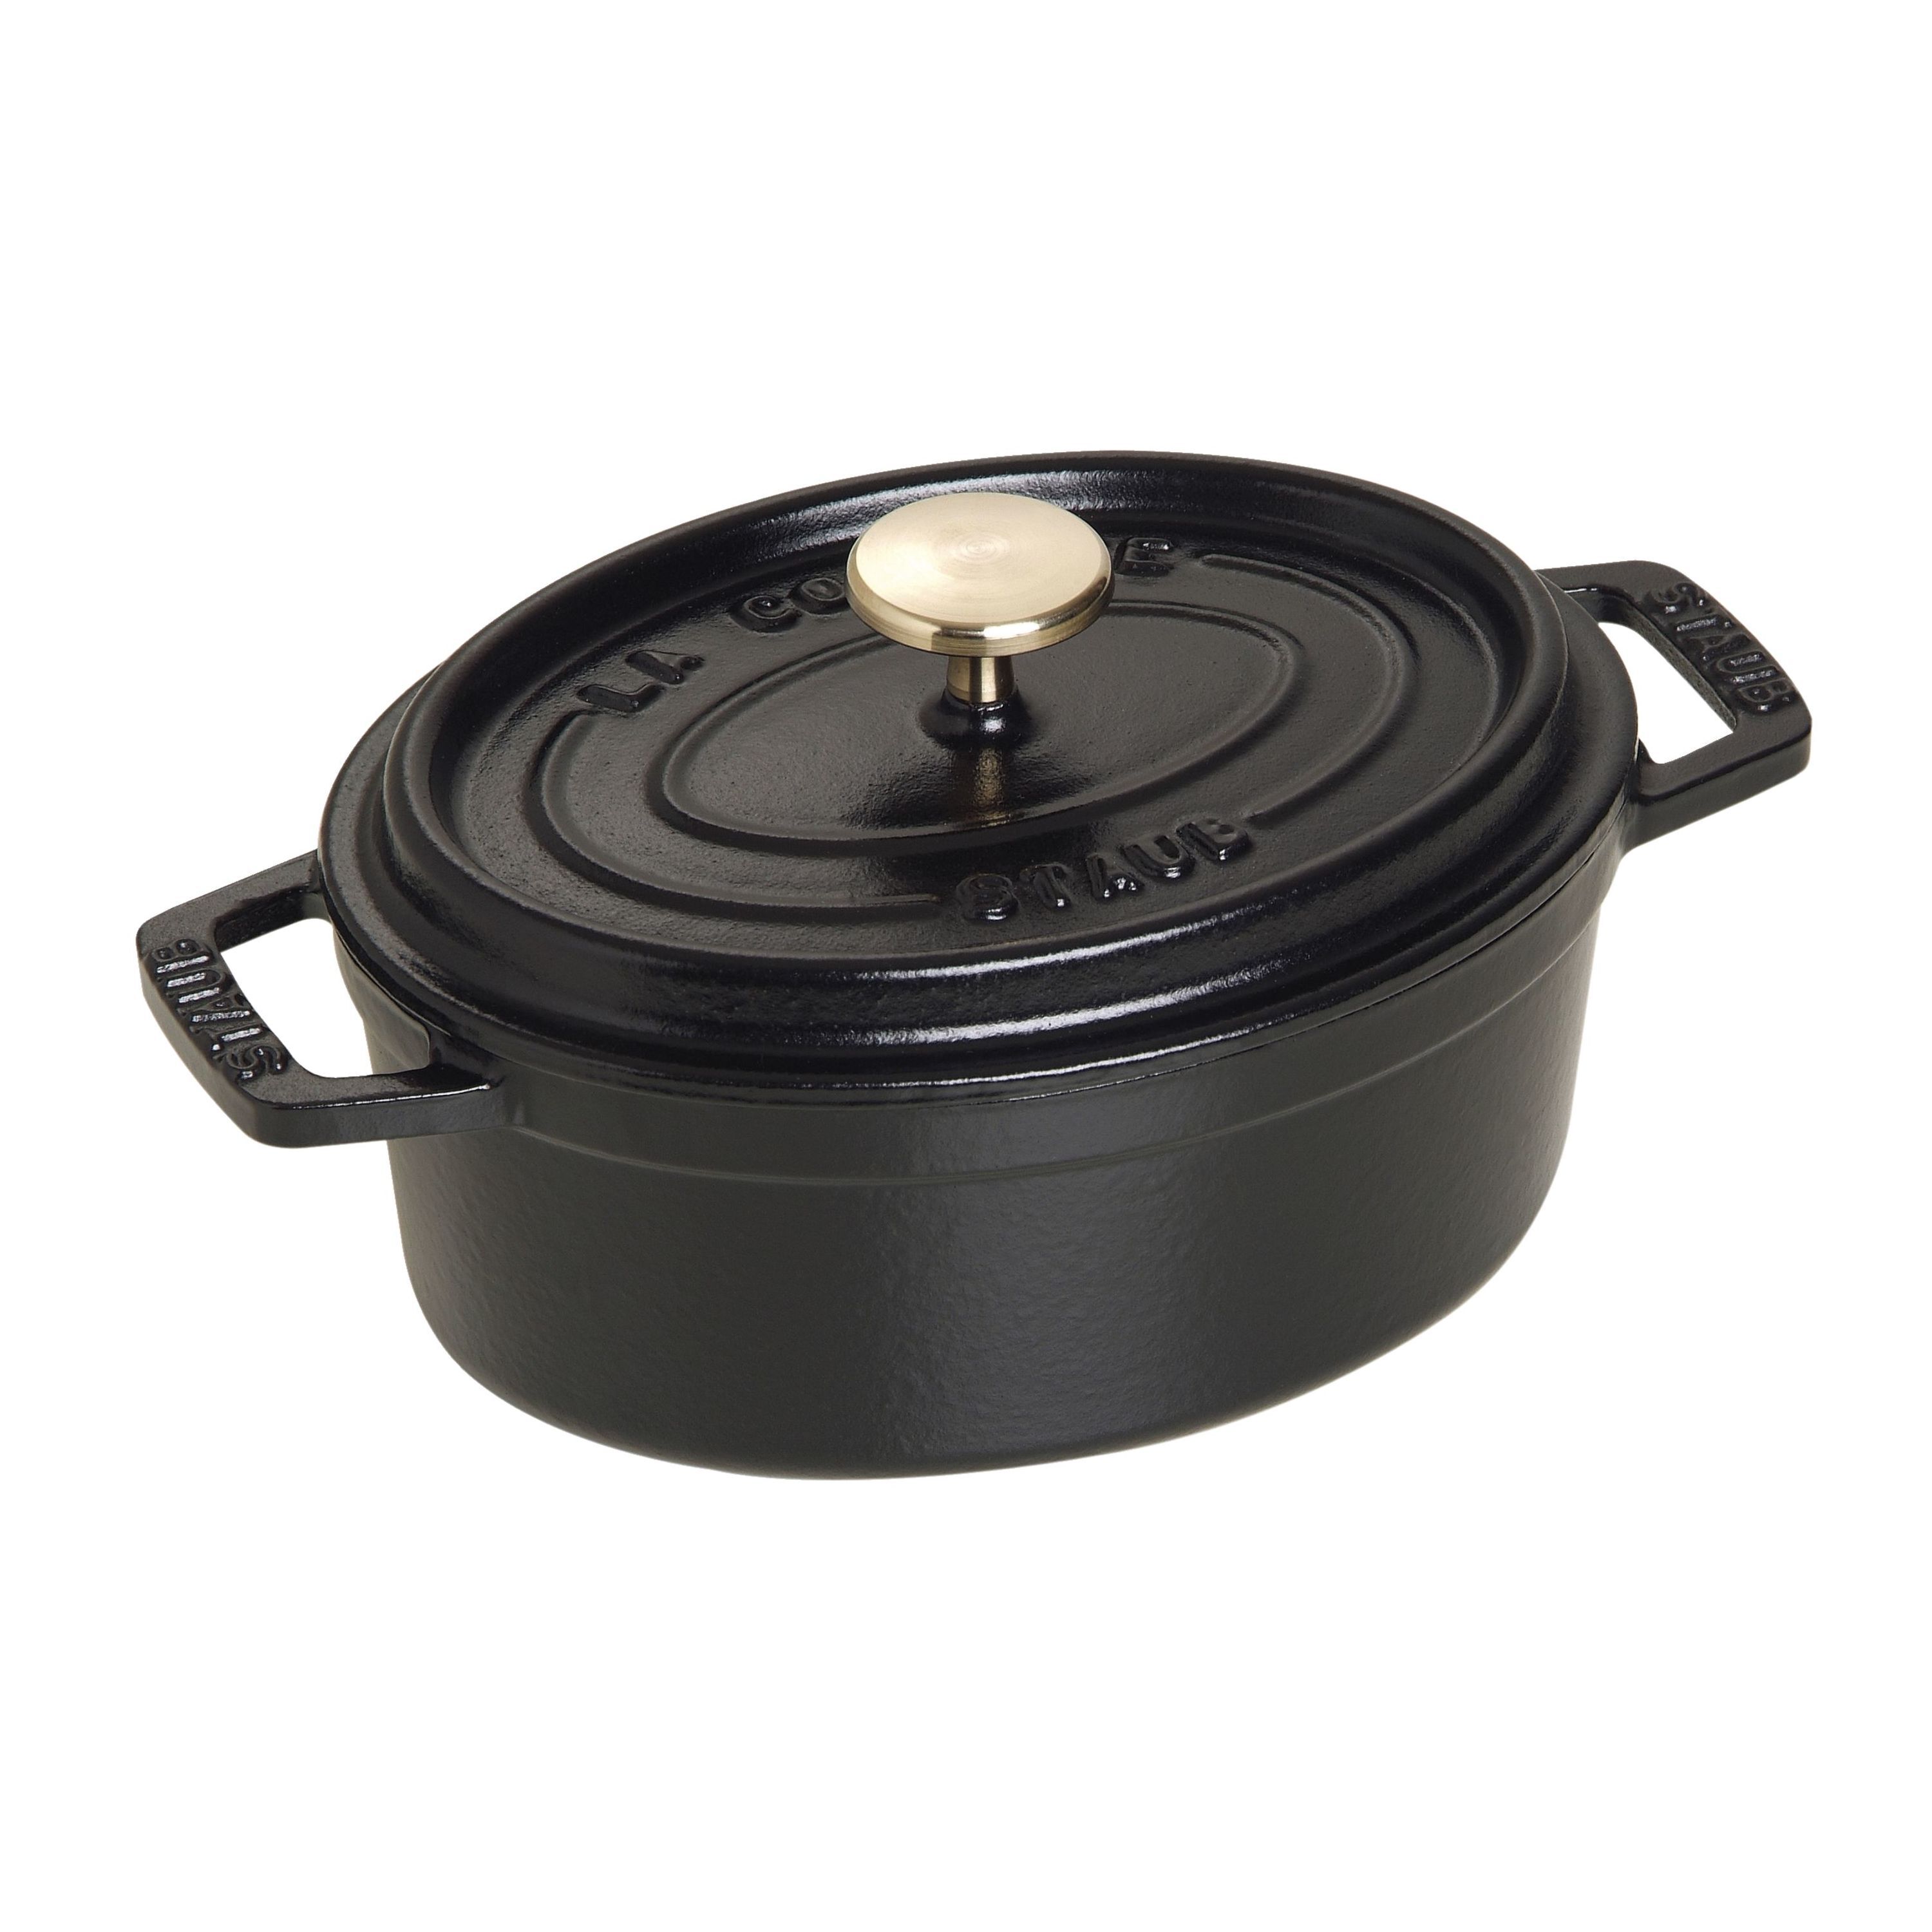 Staub Mini Dish Oval 15cm Black 